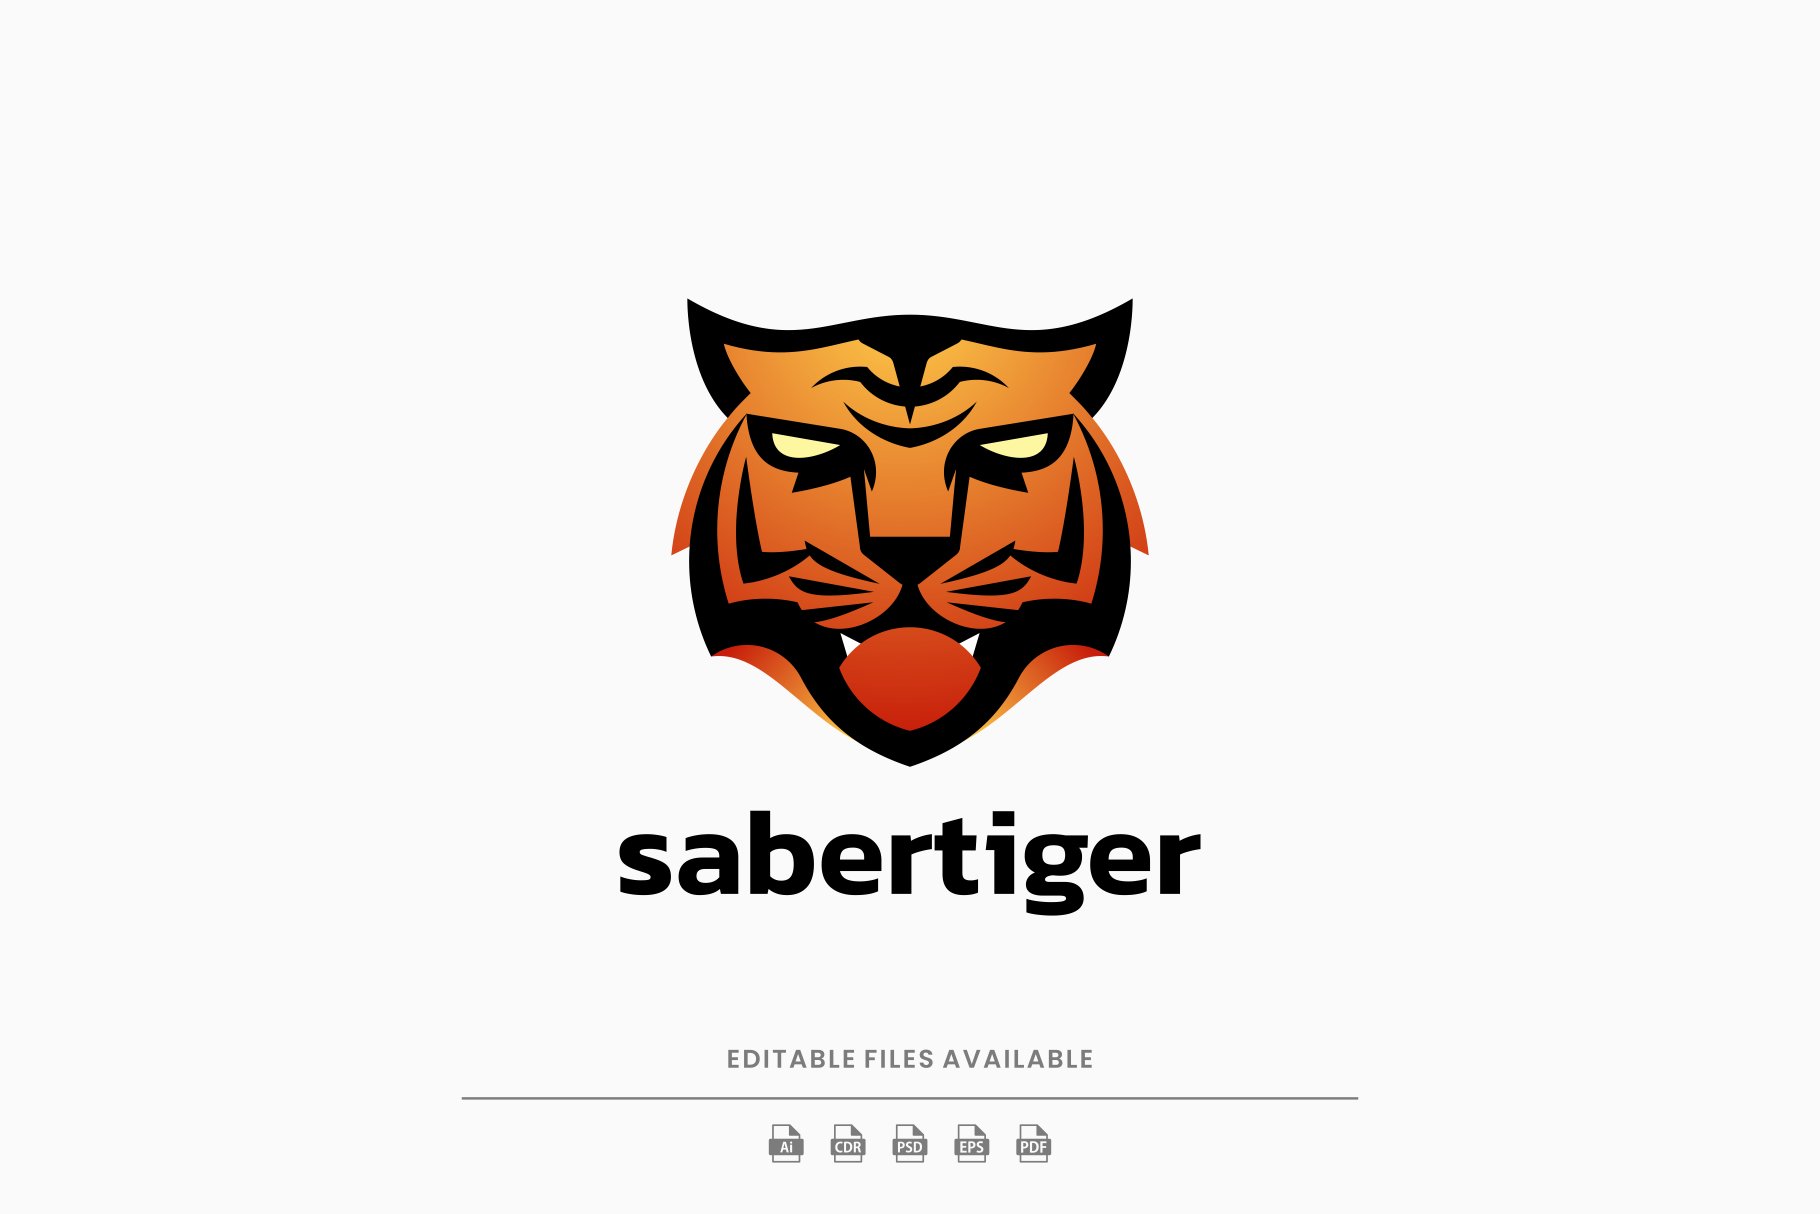 Saber Tiger Gradient Logo cover image.